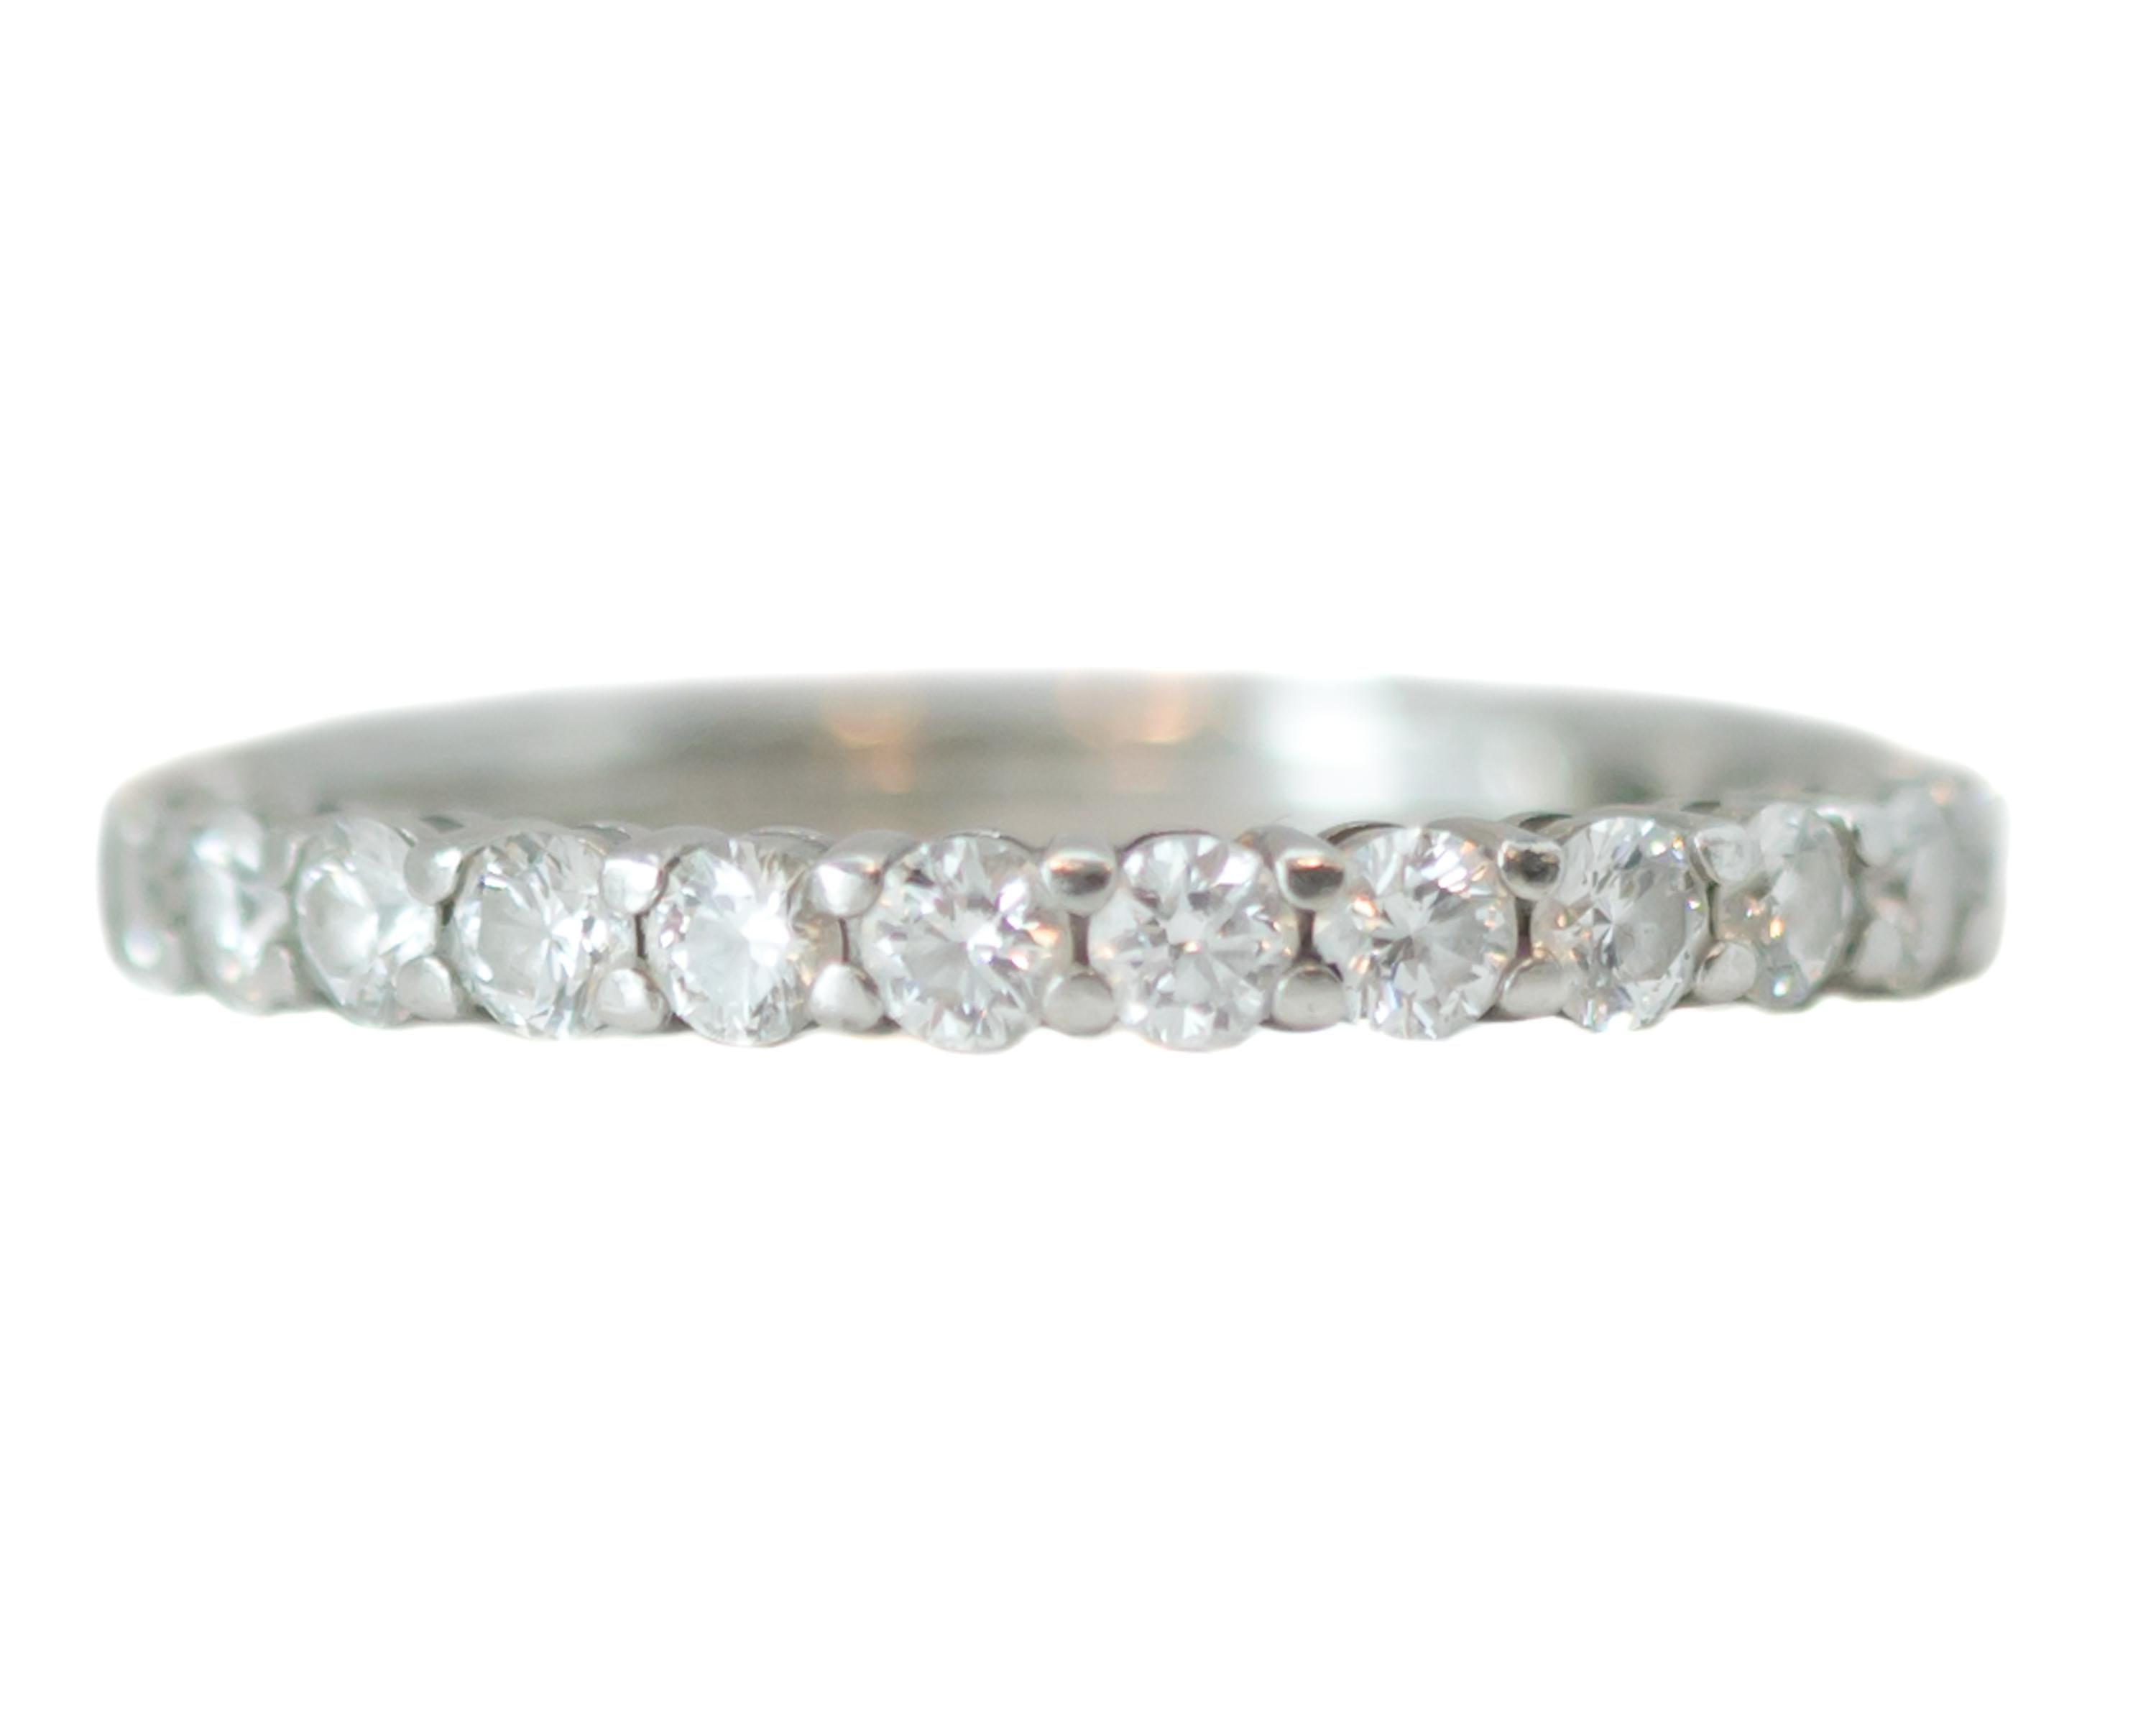 Tiffany and Co. Bague à anneau Embrace - Platine, diamants

Caractéristiques :
2.bande de 2 millimètres
0.diamants ronds brillants d'un poids total de 78 carats
Le cercle complet des diamants
Fixation du platine
L'anneau correspond à une taille 4